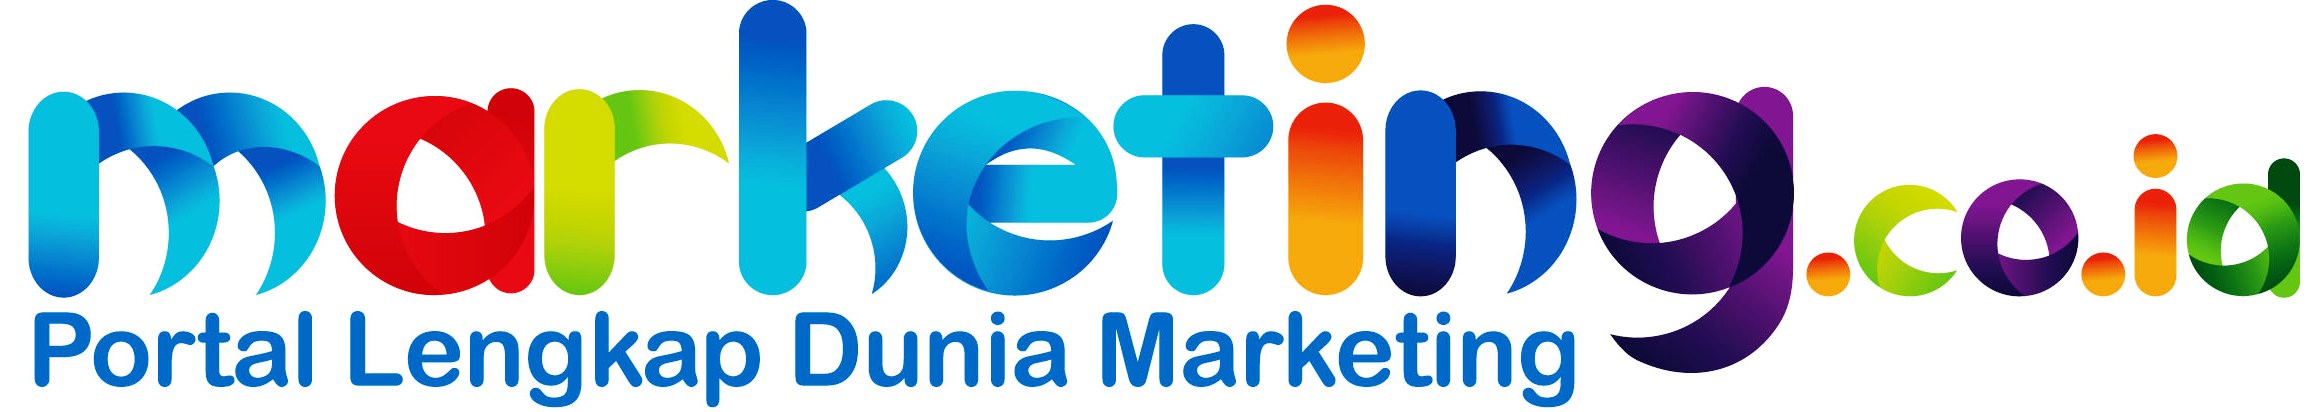 logo portal marketingcoid